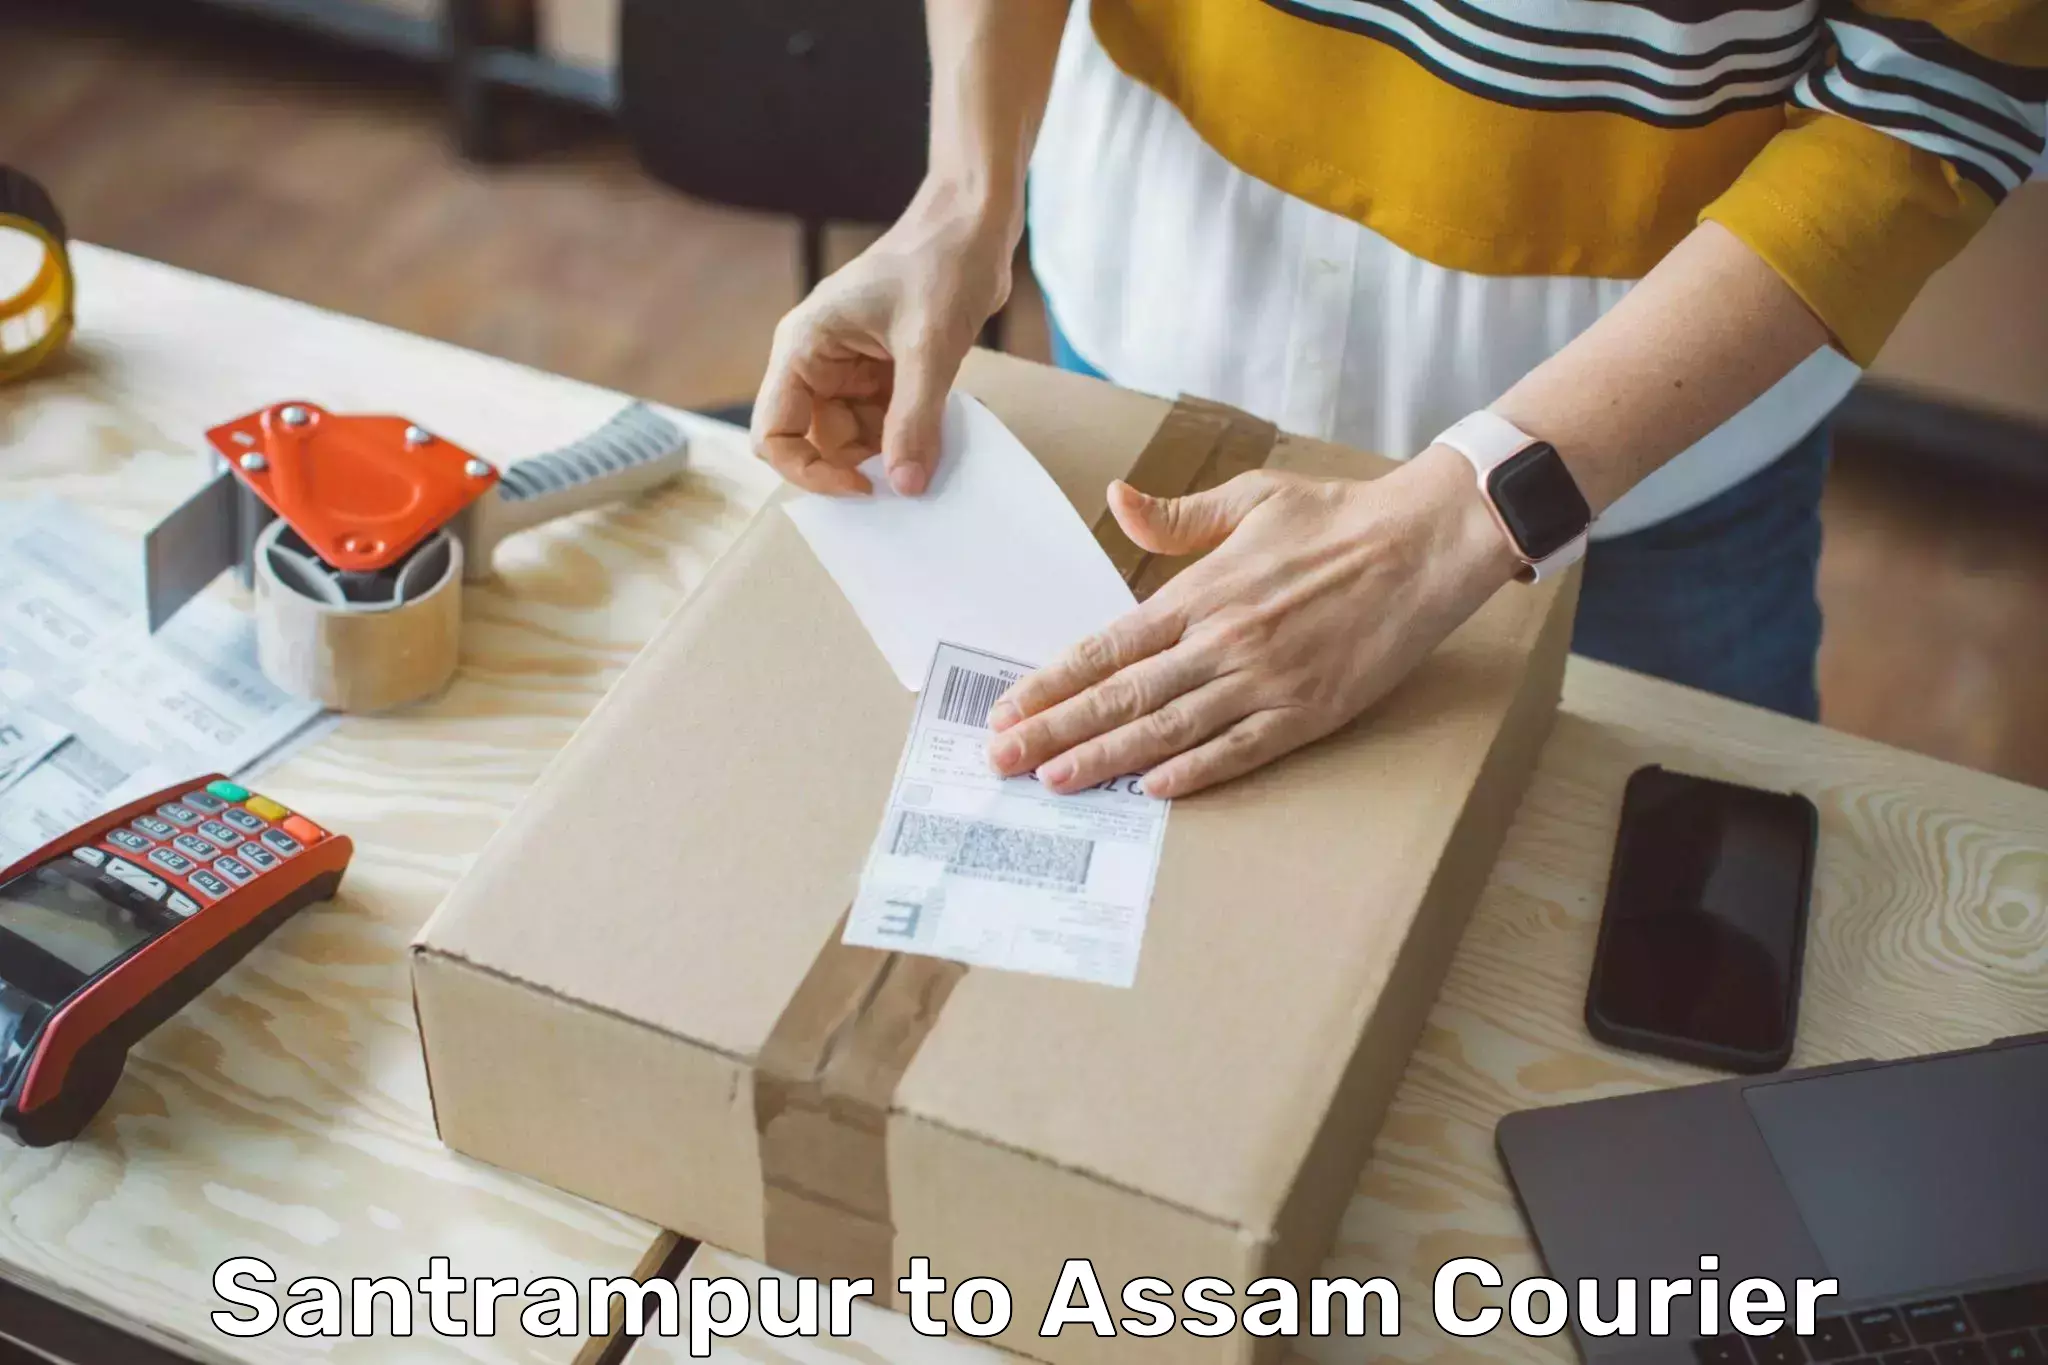 Bulk courier orders Santrampur to Dehurda